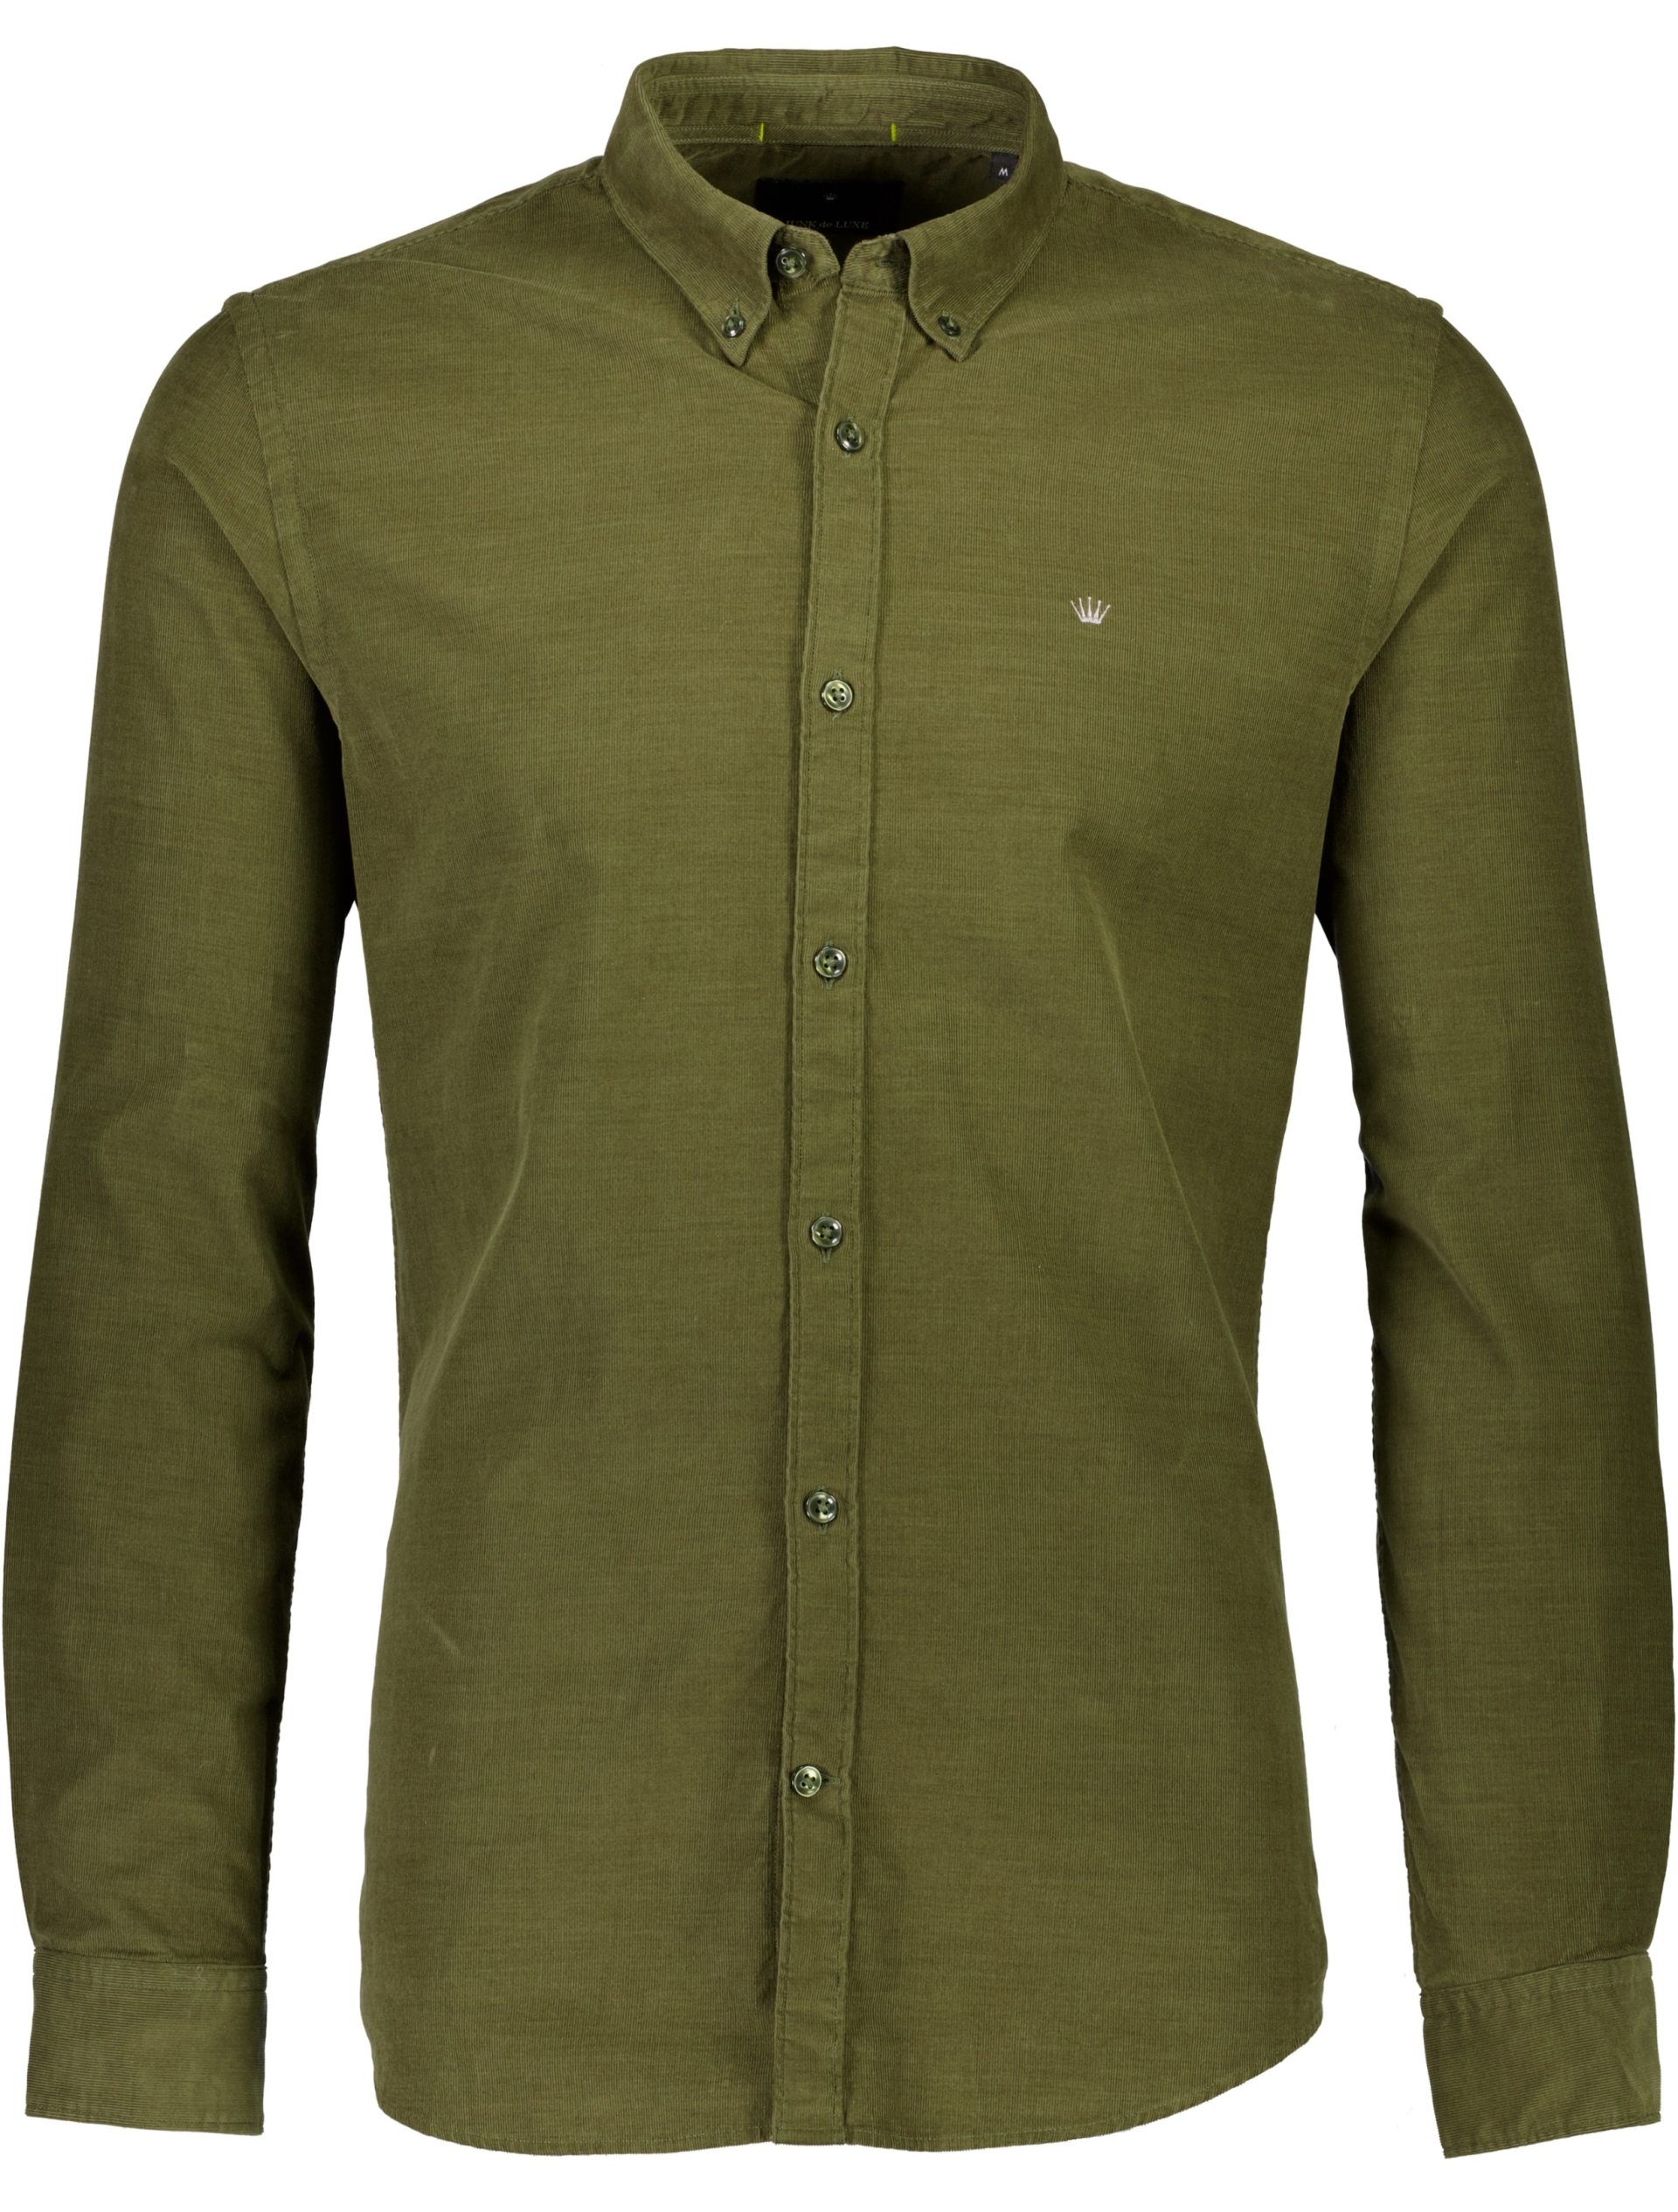 Junk de Luxe Fløjlsskjorte grøn / army